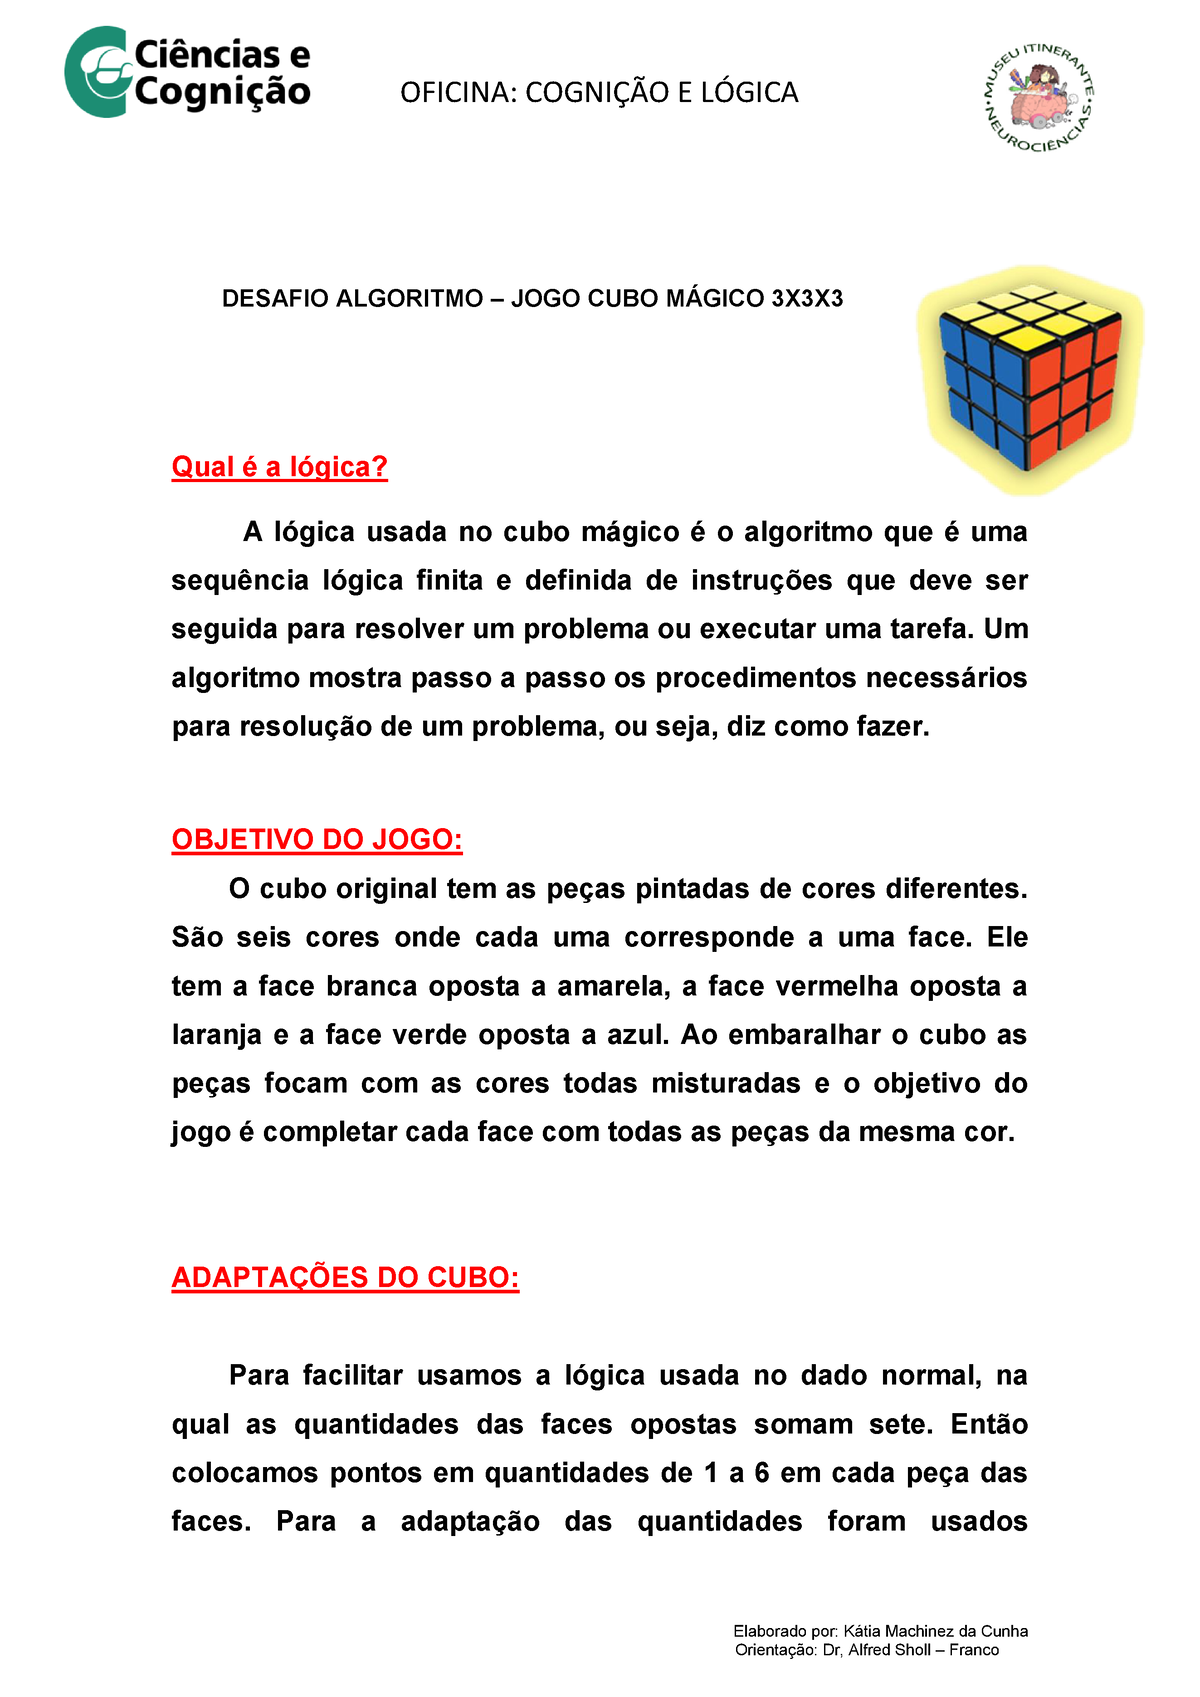 Montagem Do Cubo Magico Por Camadas, PDF